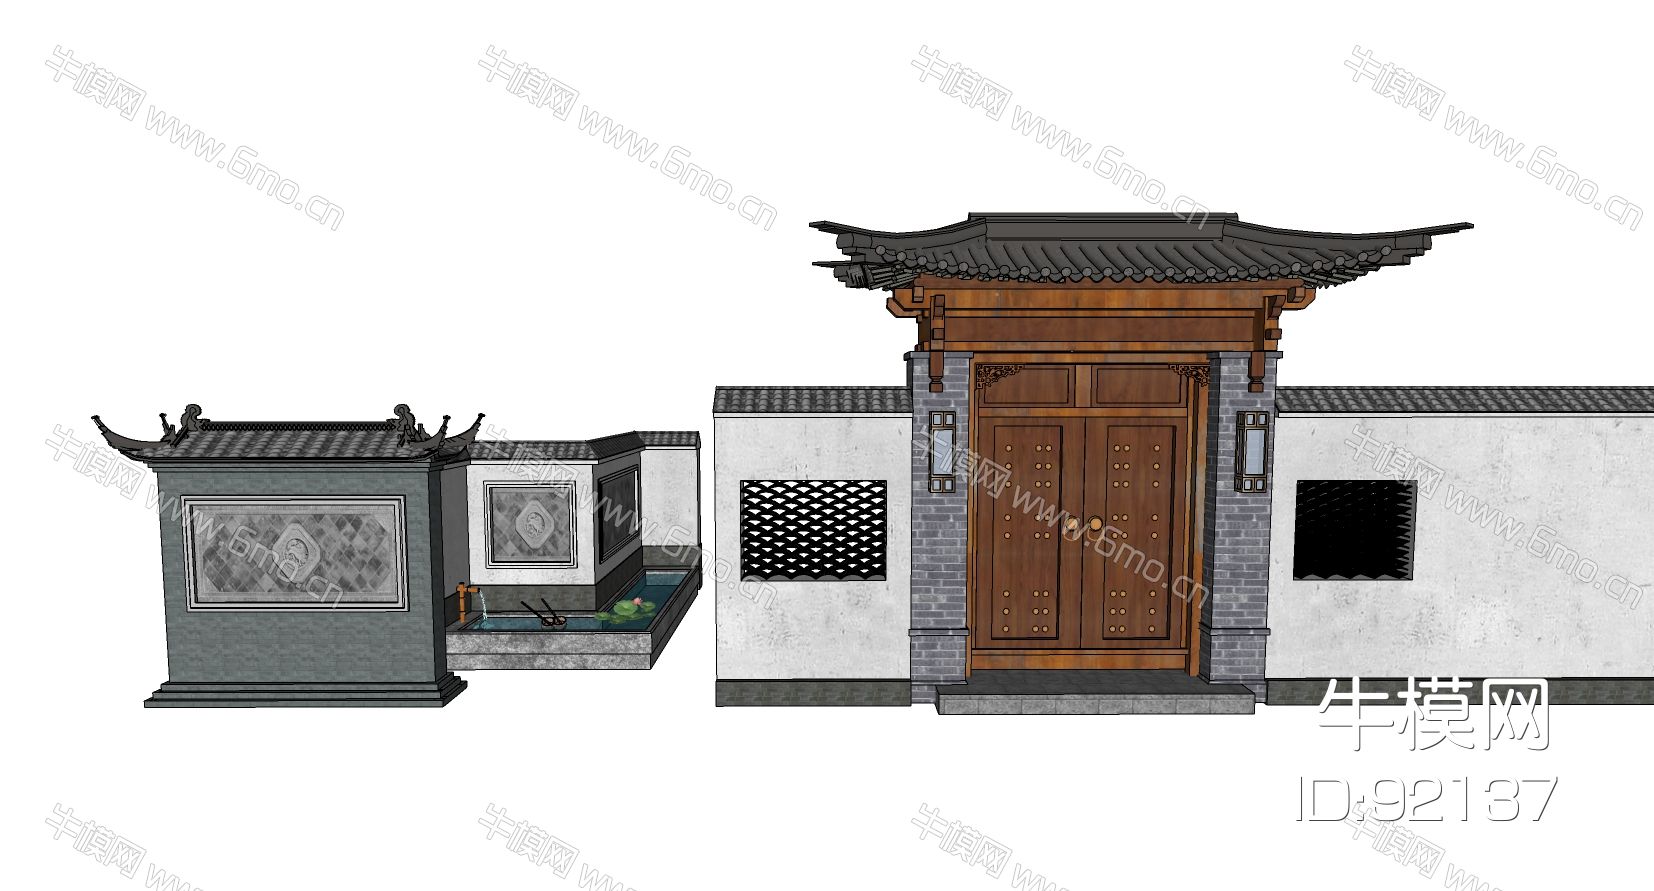 中式古建大门